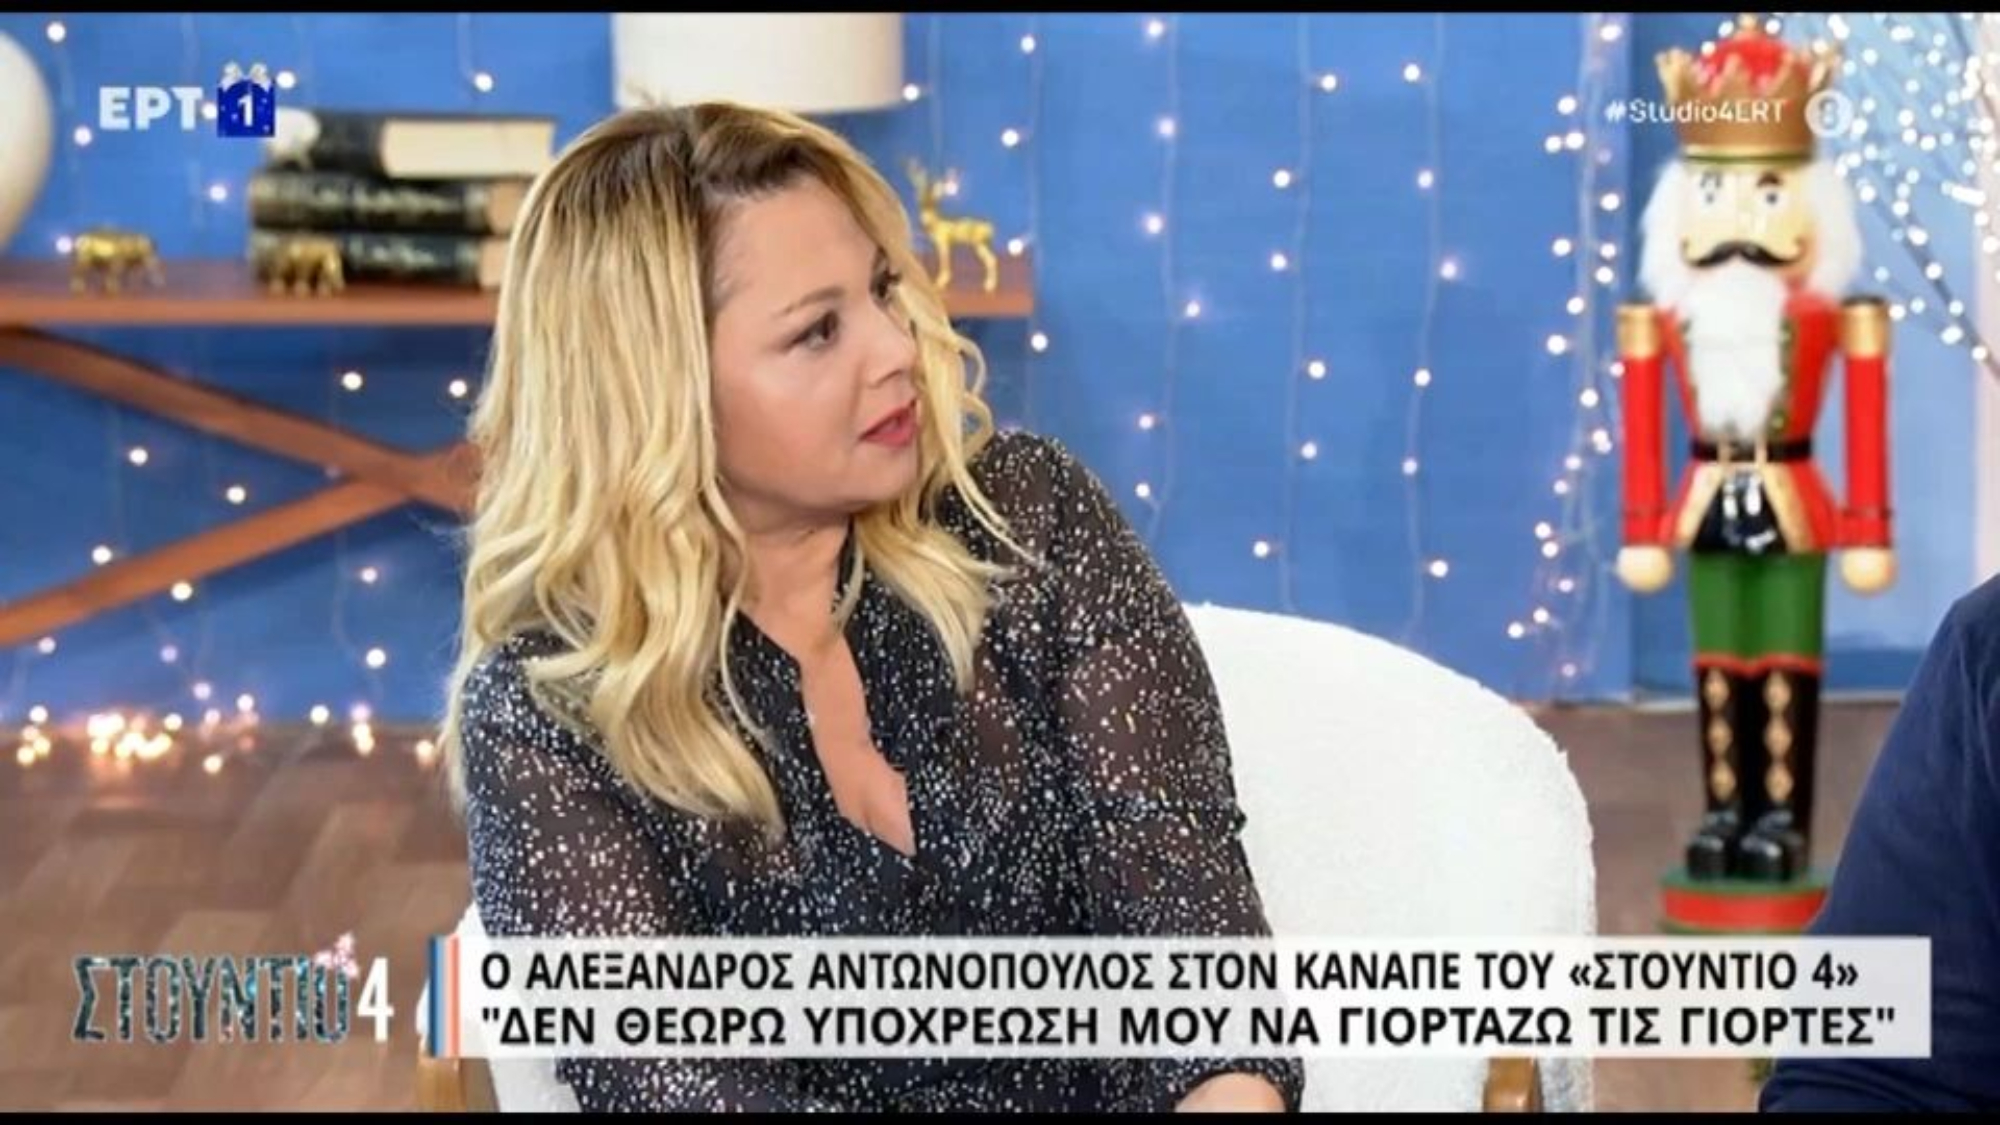 Νάνσυ Ζαμπέτογλου: Το συγκινητικό περιστατικό που αφηγήθηκε -«Καθόταν με το κεφάλι σκυφτό, το πήραμε μαζί μας και έβγαλε 40 ευρώ» (VIDEO)